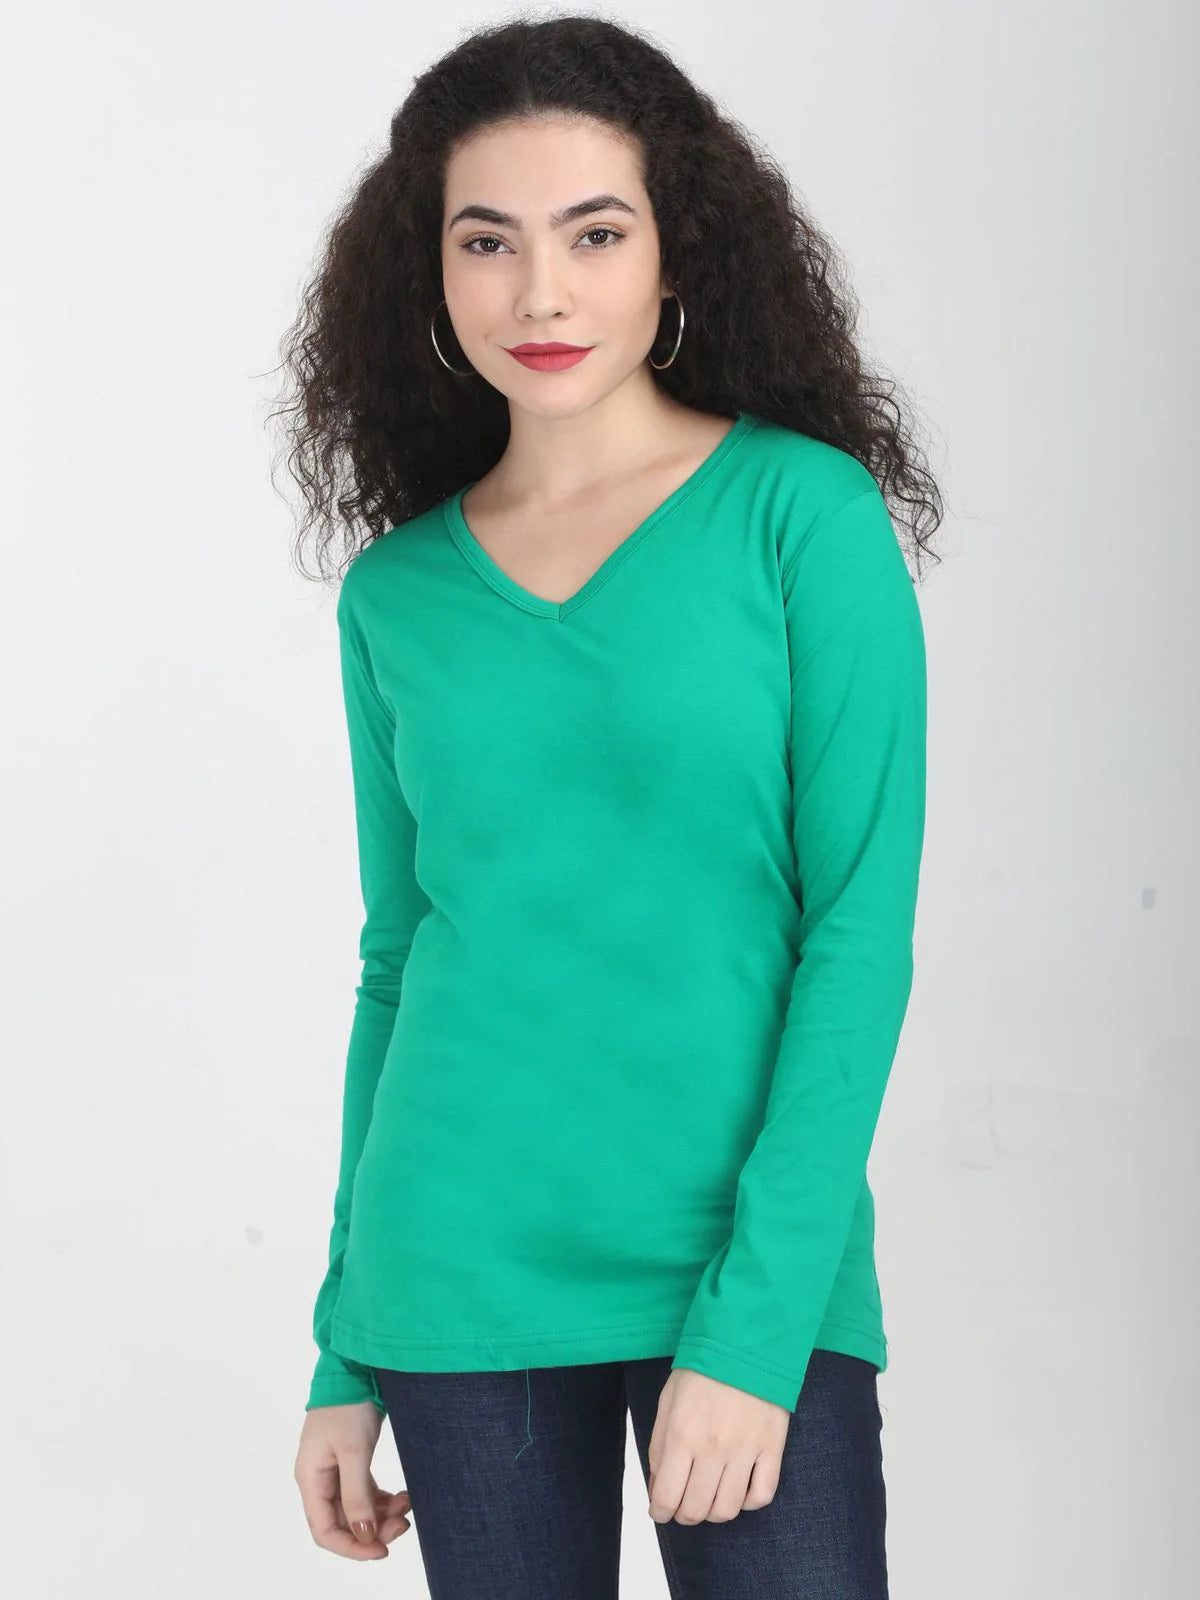 Fleximaa Women's Cotton Plain V Neck Full Sleeve T-Shirt (Pack of 4) - Fleximaa